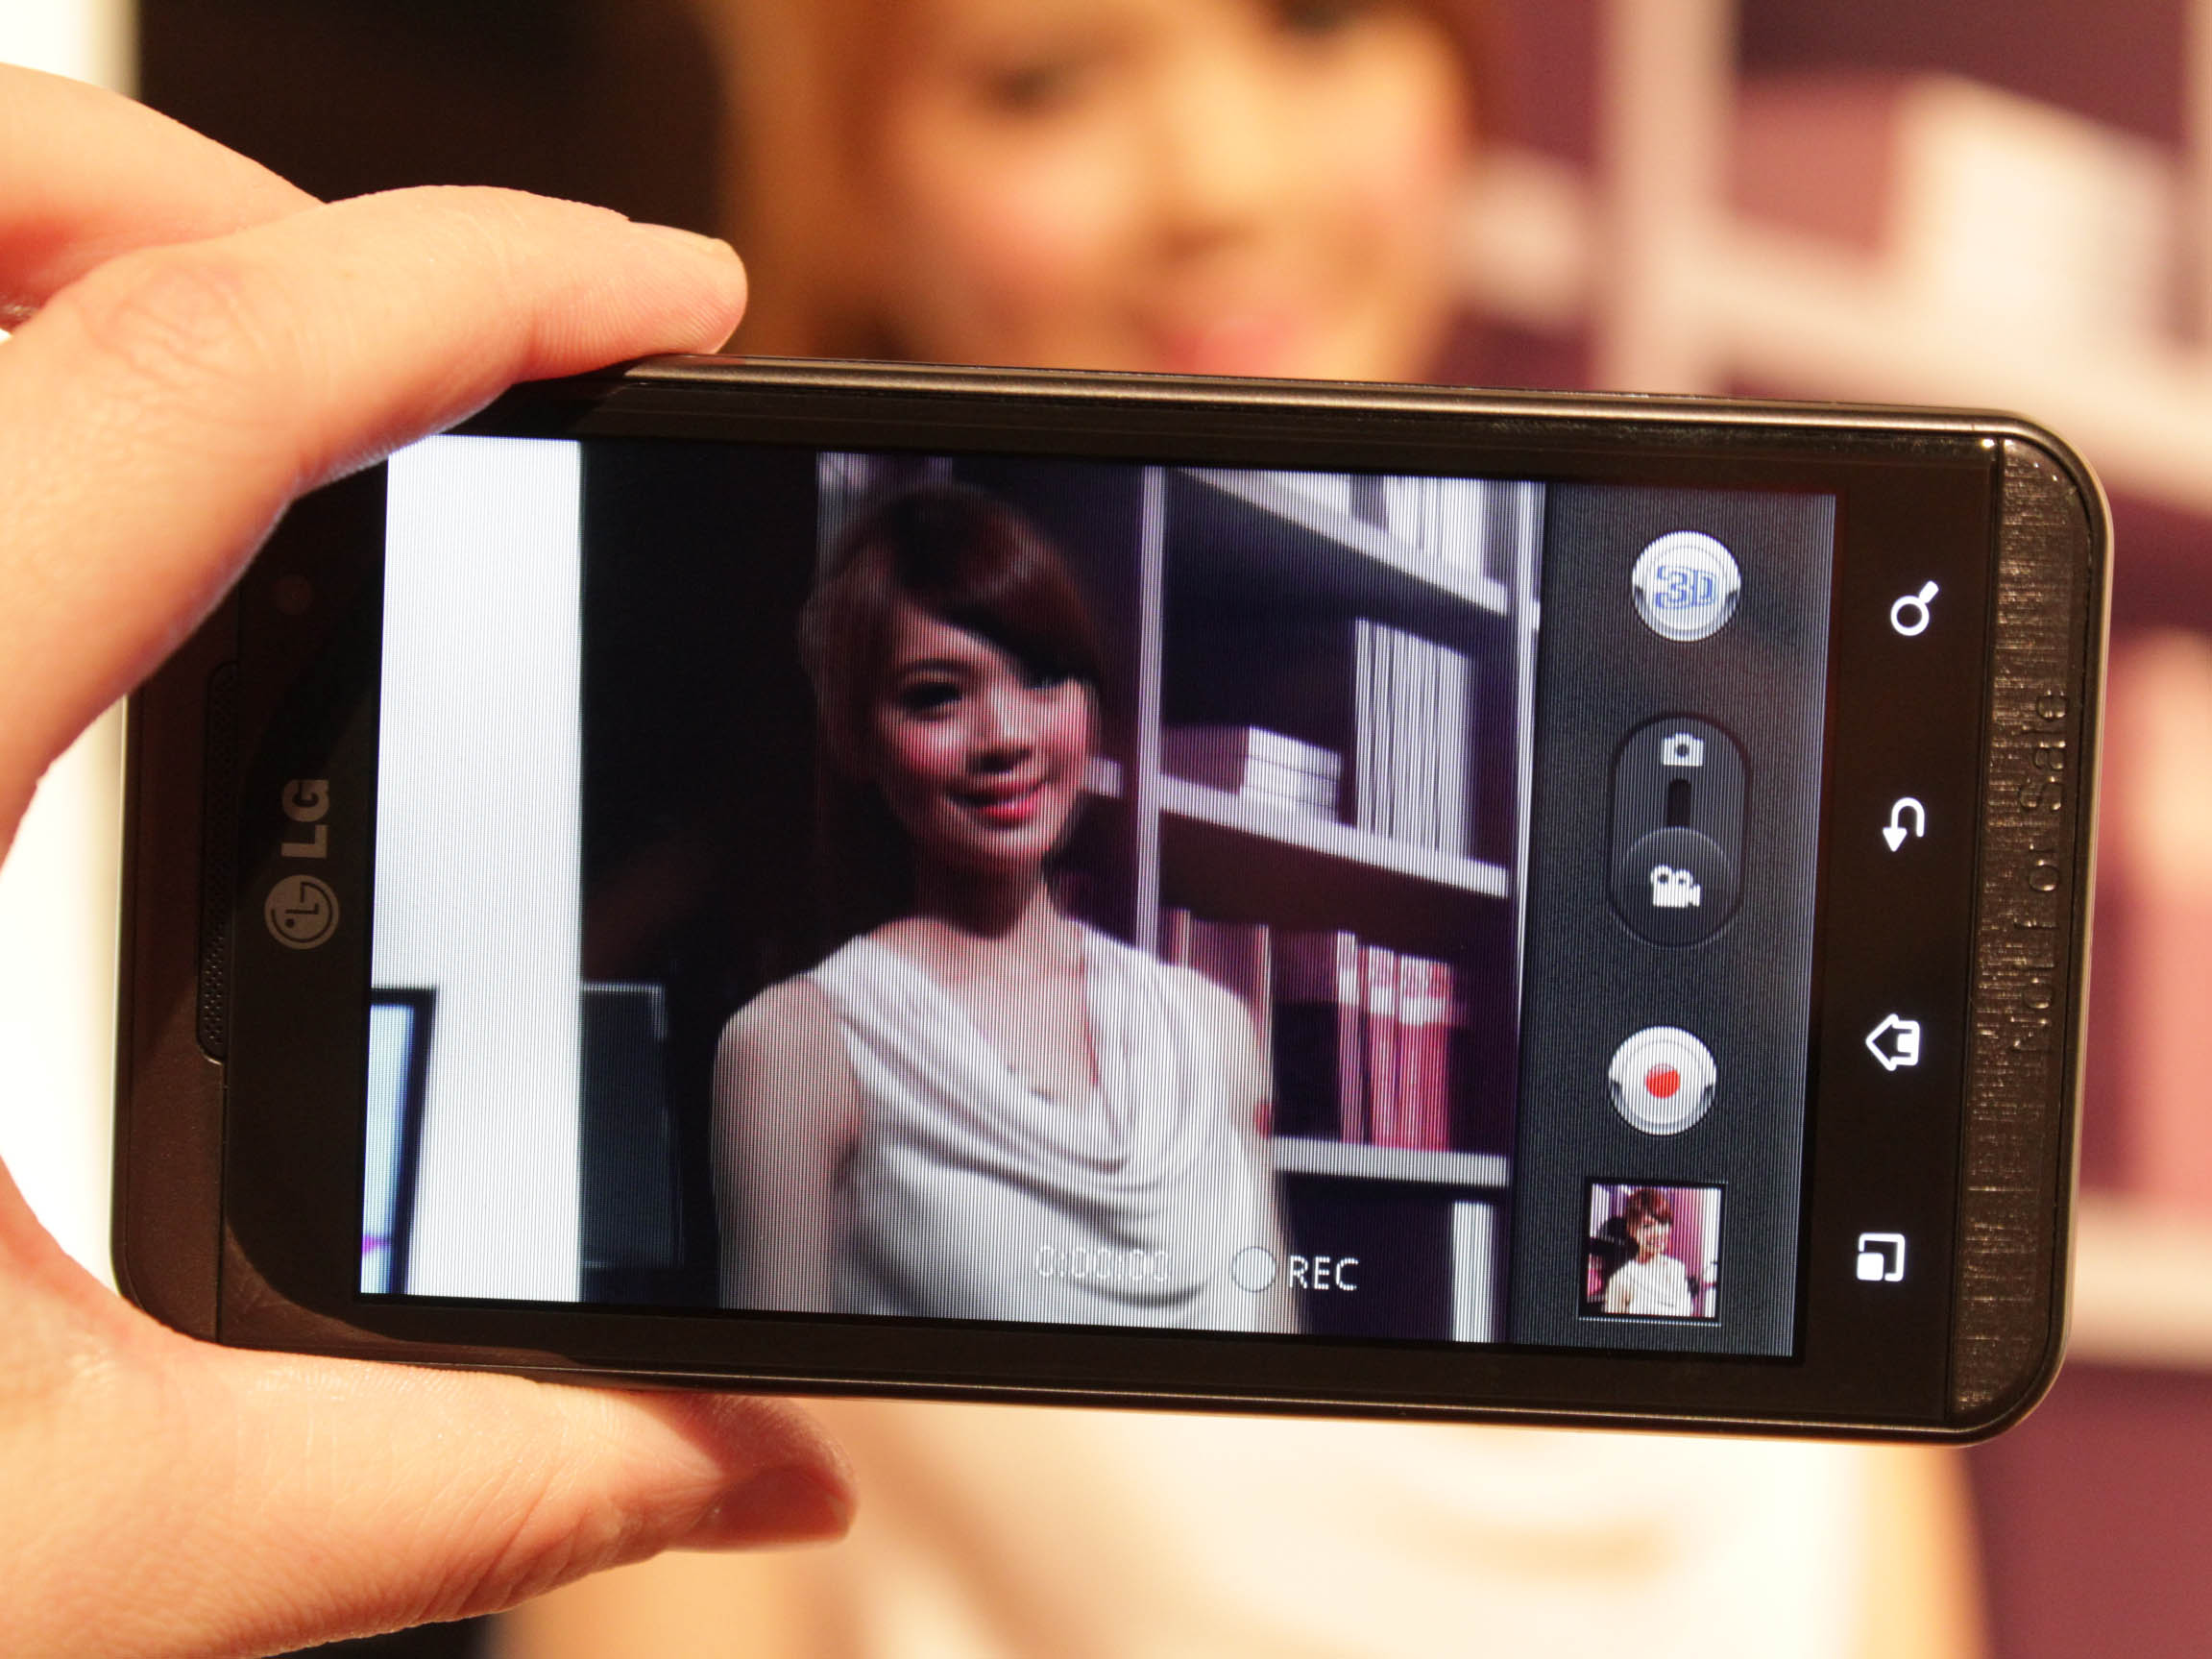 裸視 3D 手機 LG Optimus 3D P920 影片試坃